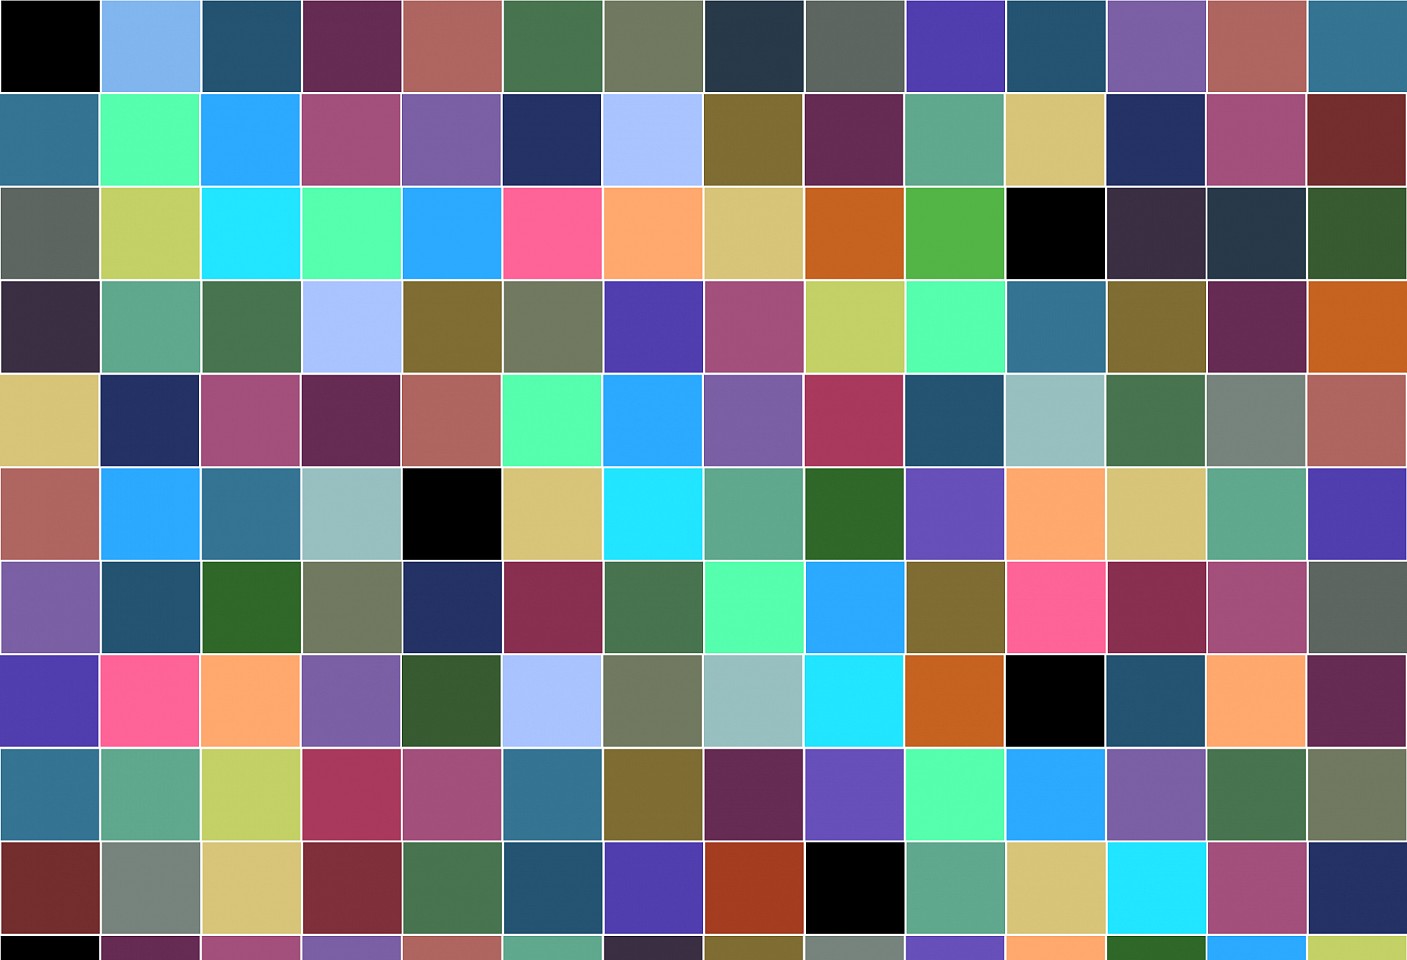 Dane Albert, Color Blocks #24, 2023
Acrylic on canvas (Concept), 48 x 60 in. (121.9 x 152.4 cm)
Series of colored blocks in multiple configurations
DA.cb-2023-024